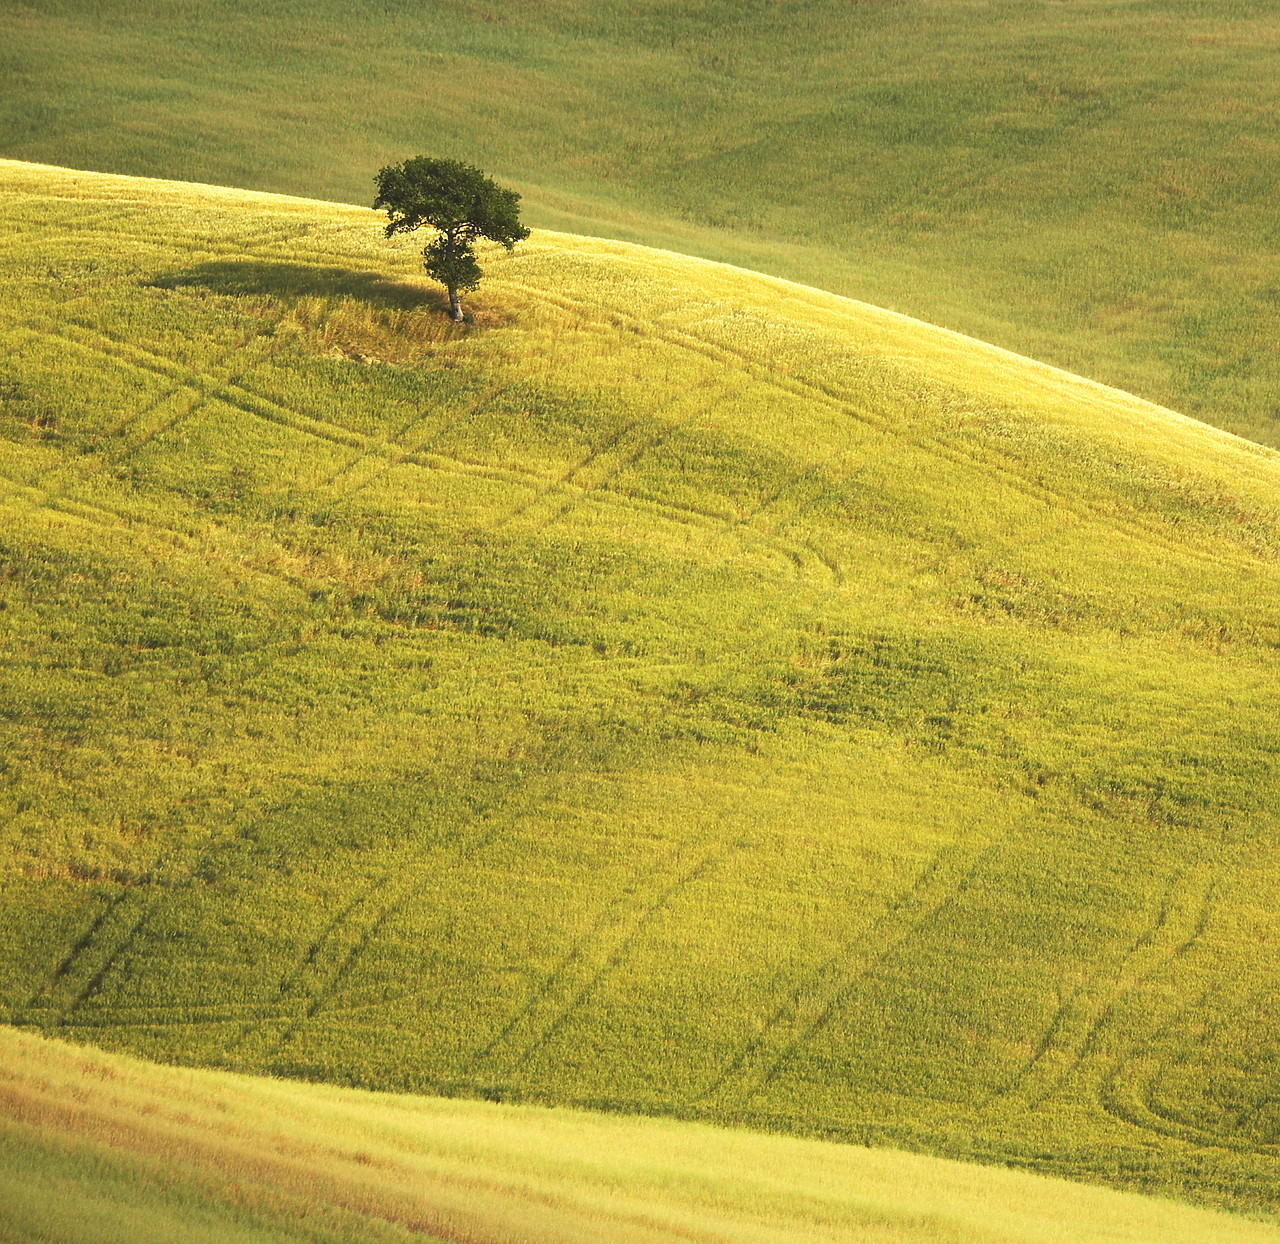 #070154-1 - Lone Tree in Landscape, near Pienza, Tuscany, Italy